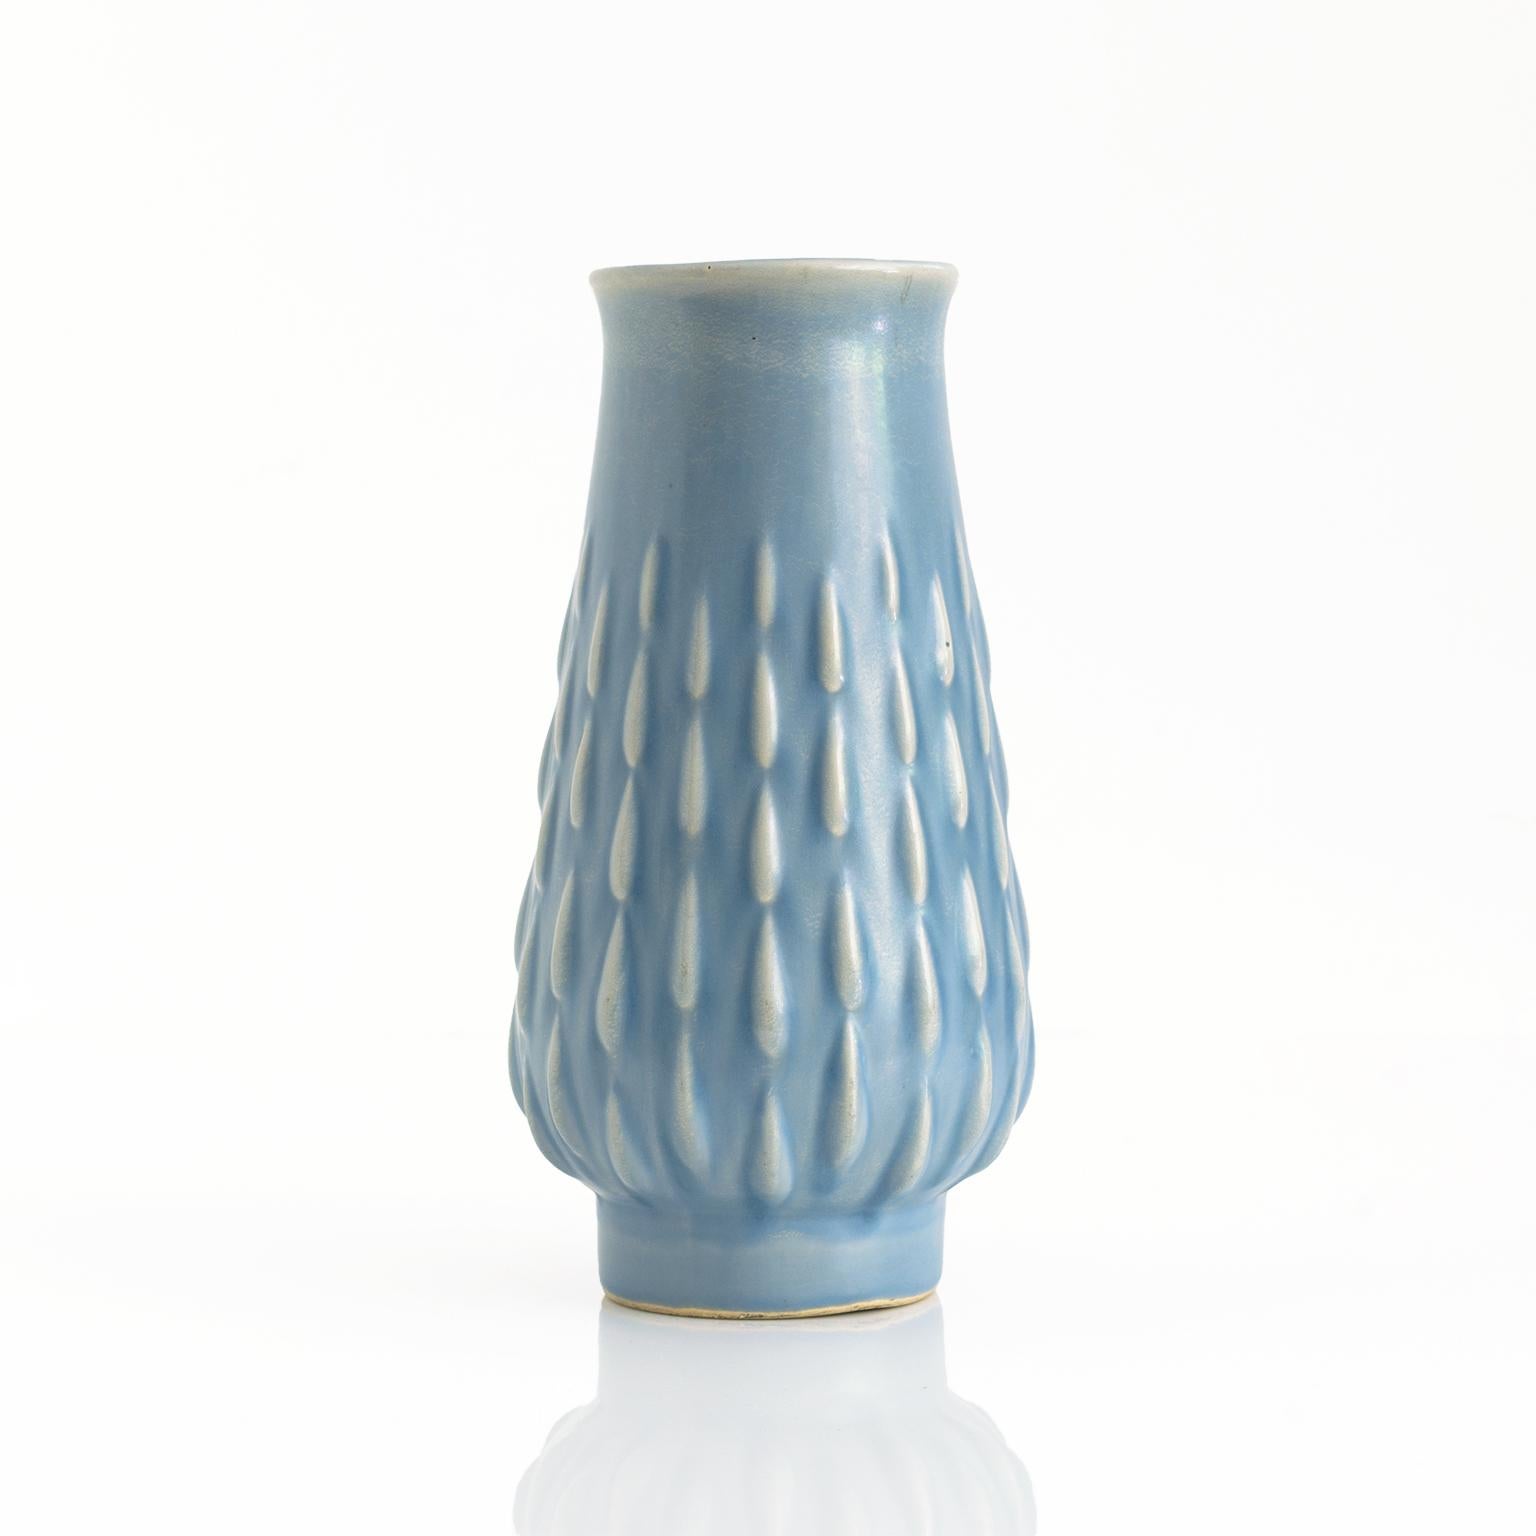 Un vase émaillé bleu pâle sur pied d'Ewald Dahlskog avec motif en relief. Signé en bas ED avec la marque du fabricant pour Bo Fajans. Fabriqué en Suède vers la fin des années 1930. 

Mesures : hauteur : 20,3 cm, diamètre : 12,7 cm.